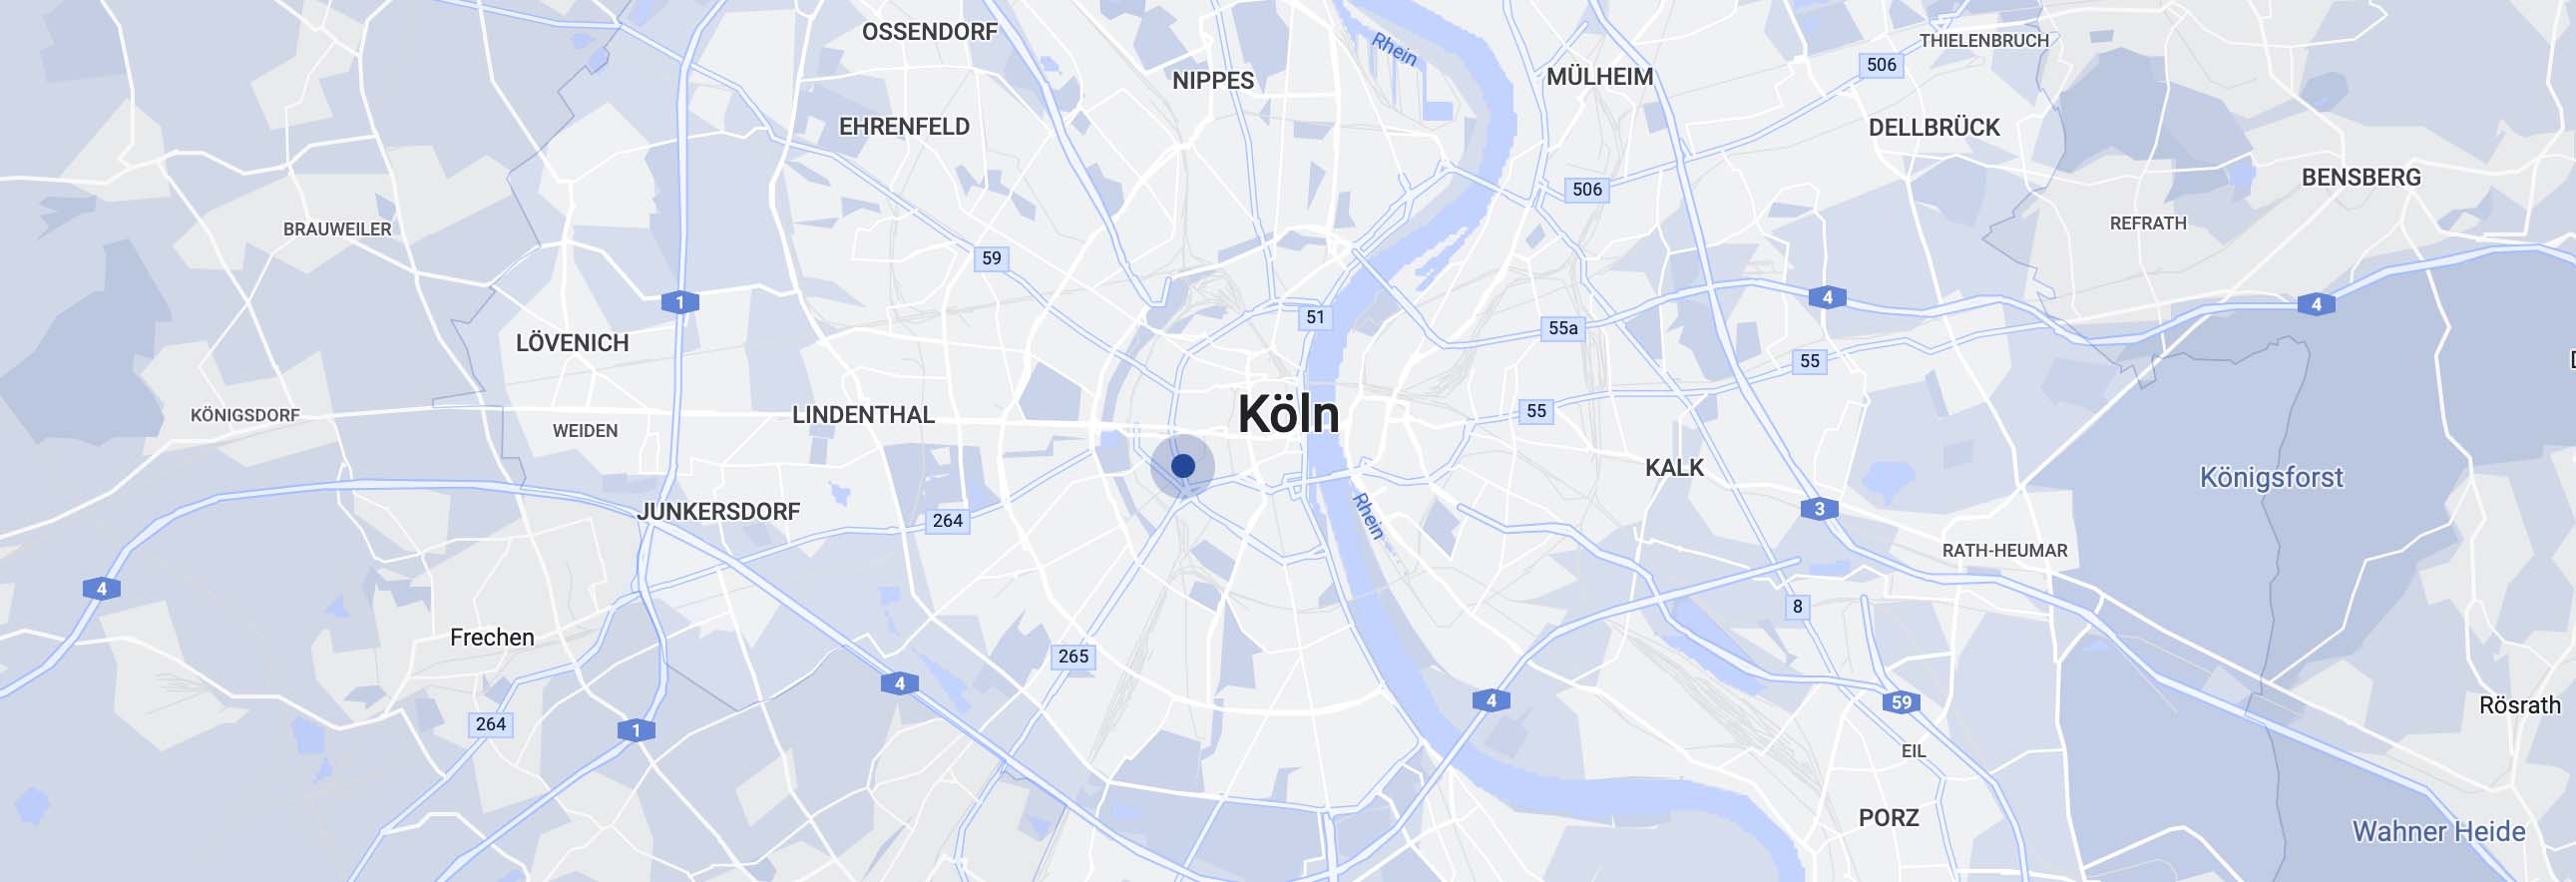 Kartenausschnitt von Köln